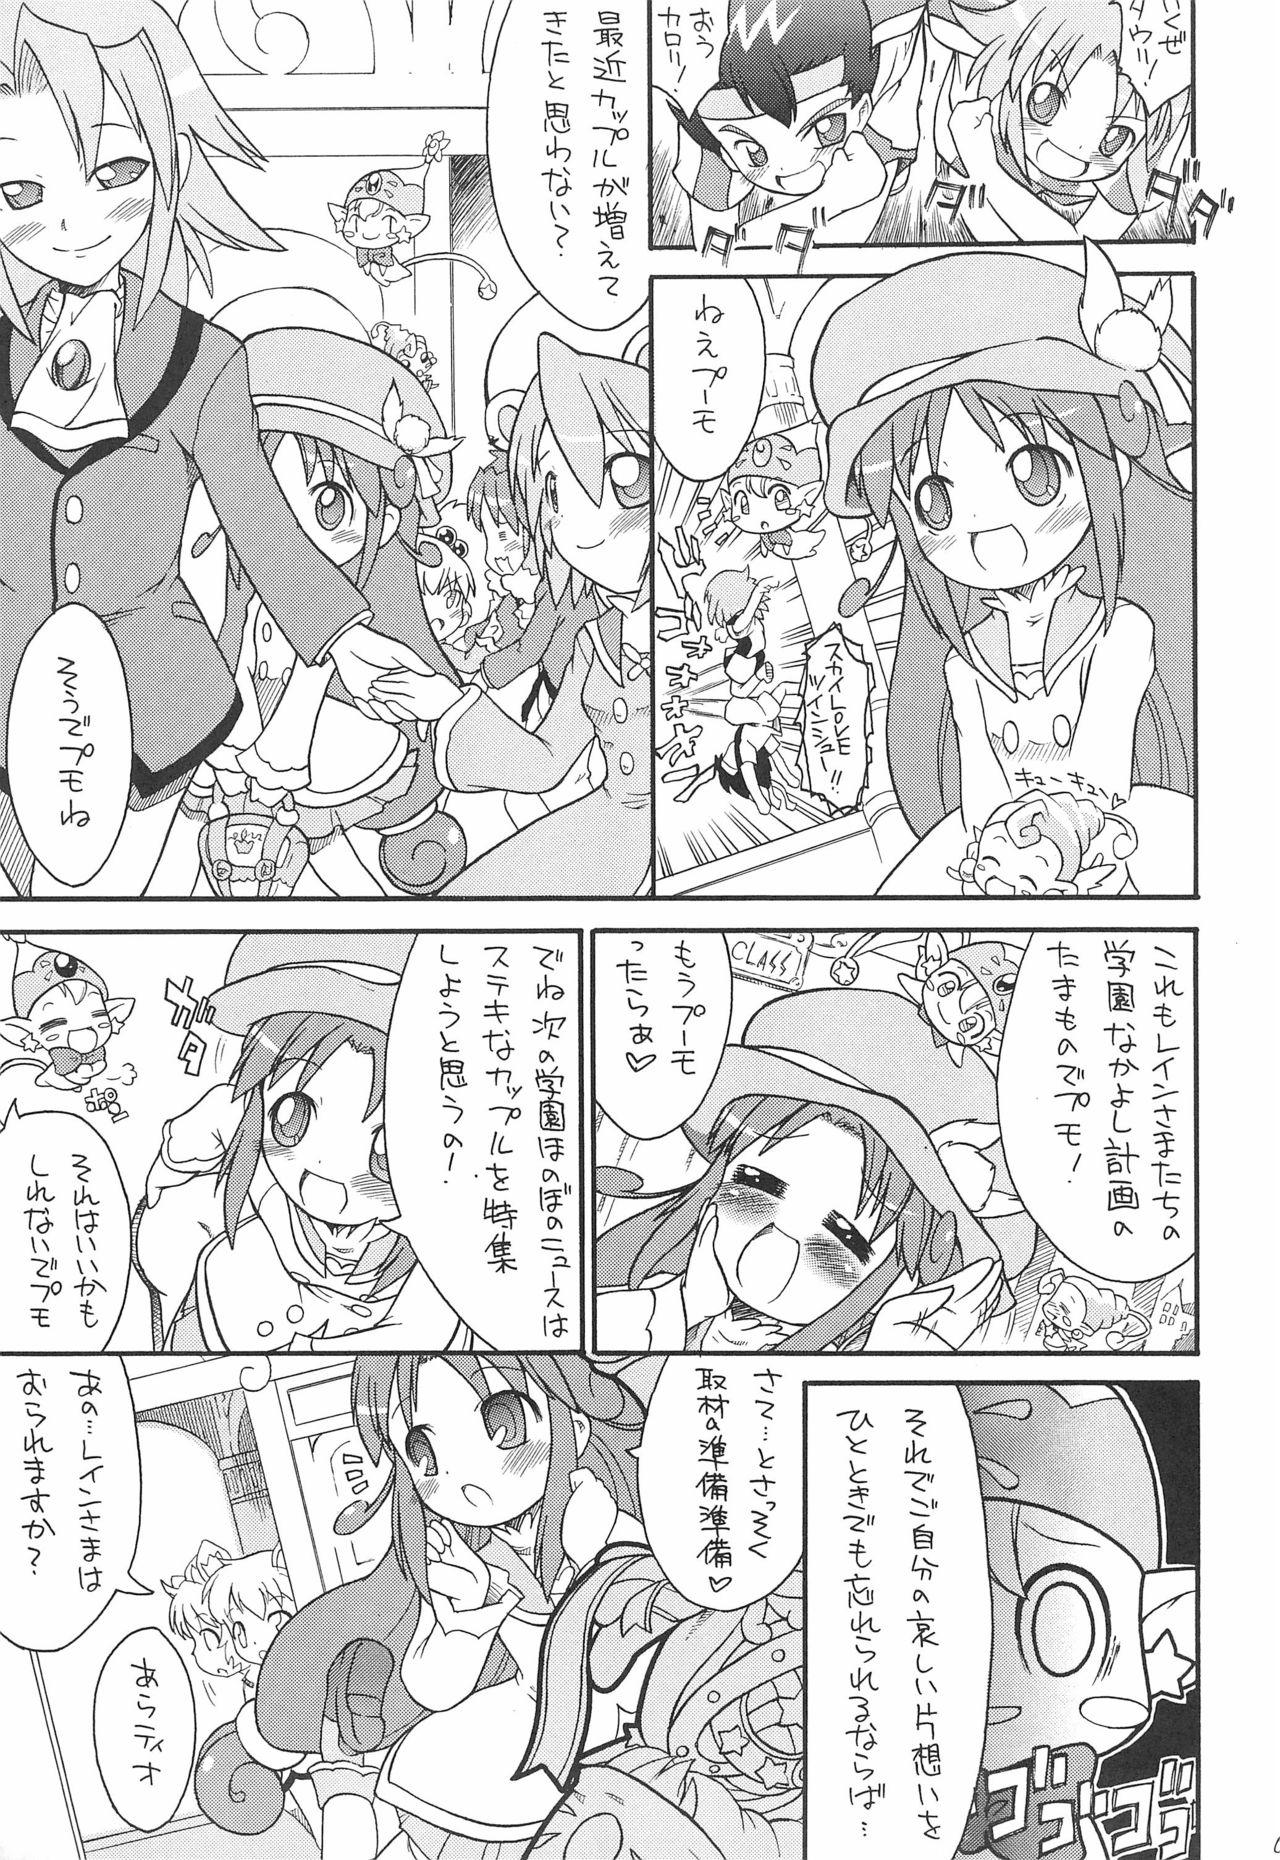 Suck Kodomo ja Neenda Princess nanda! 4 - Fushigiboshi no futagohime | twin princesses of the wonder planet Girl Fuck - Page 5